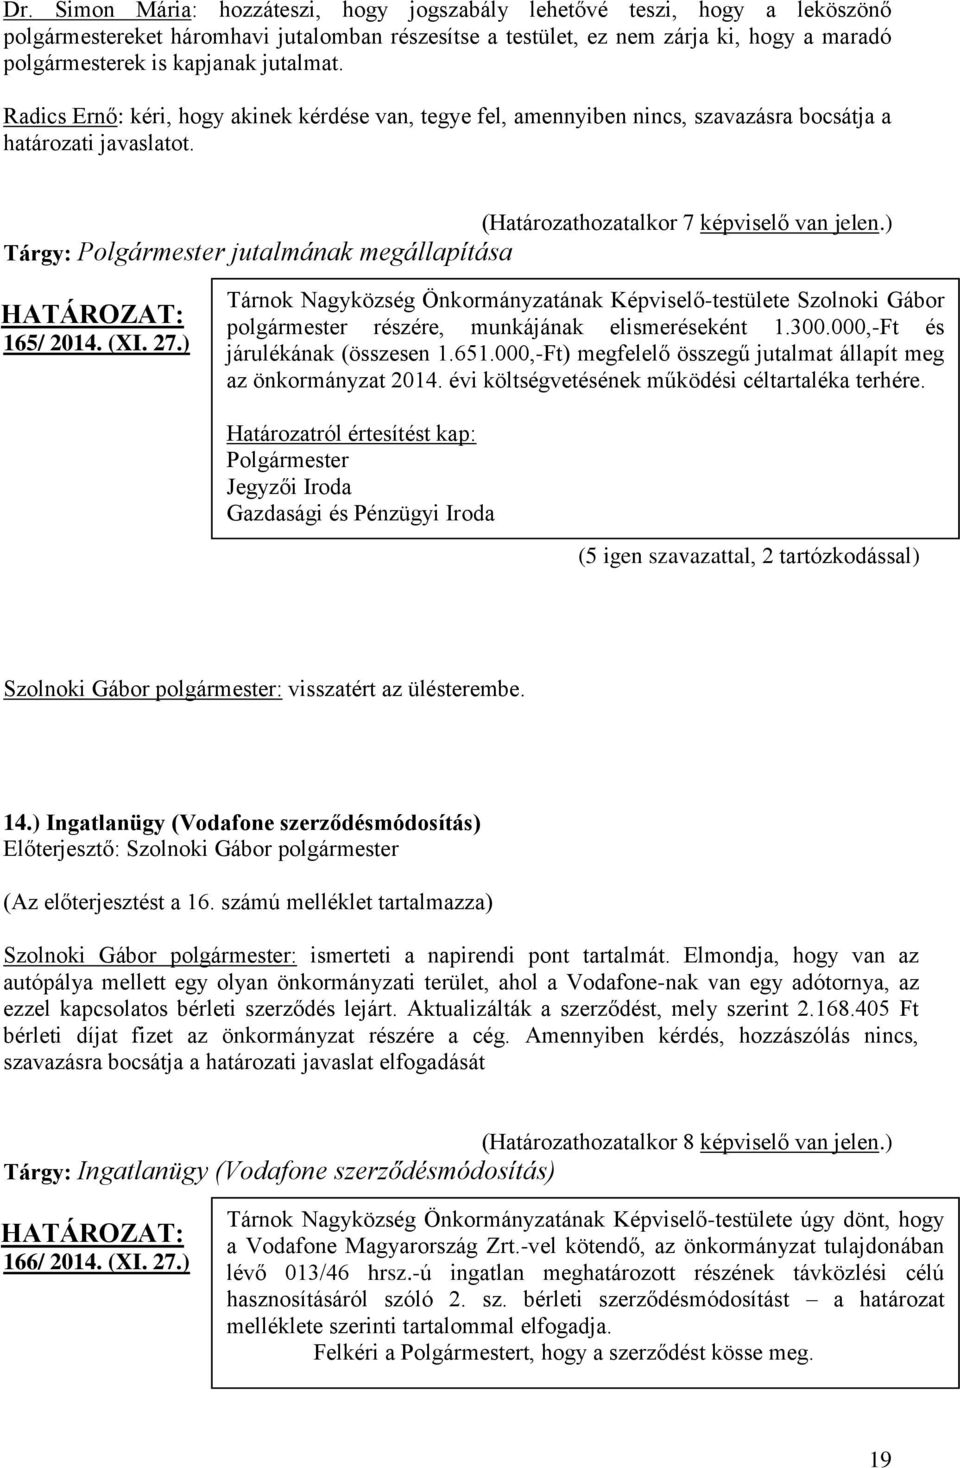 ) Tárgy: jutalmának megállapítása 165/ 2014. (XI. 27.) Tárnok Nagyközség Önkormányzatának Képviselő-testülete Szolnoki Gábor polgármester részére, munkájának elismeréseként 1.300.